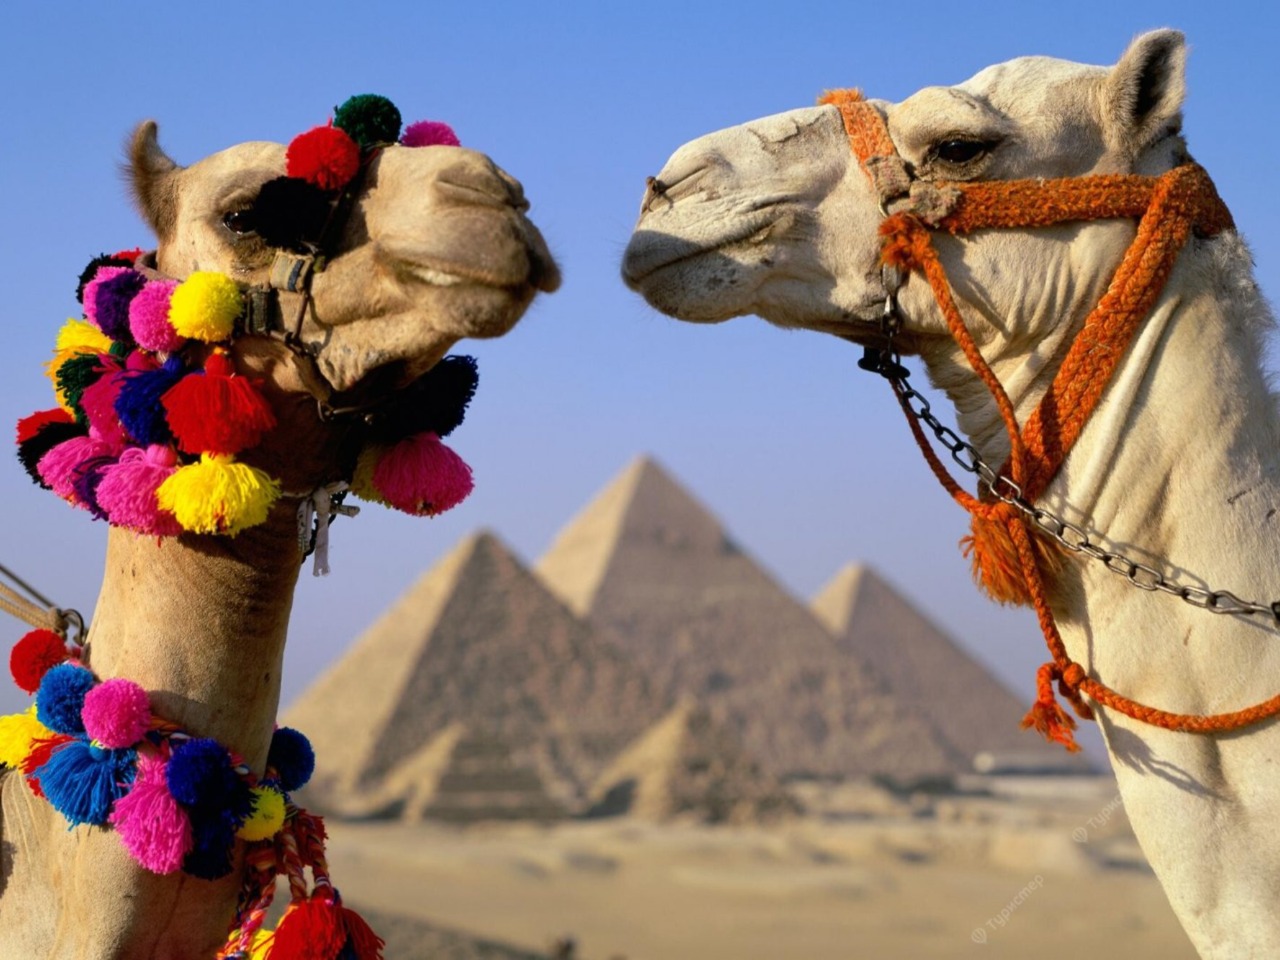 Познаем сокровища Каира: feel free! | Цена 150€, отзывы, описание экскурсии